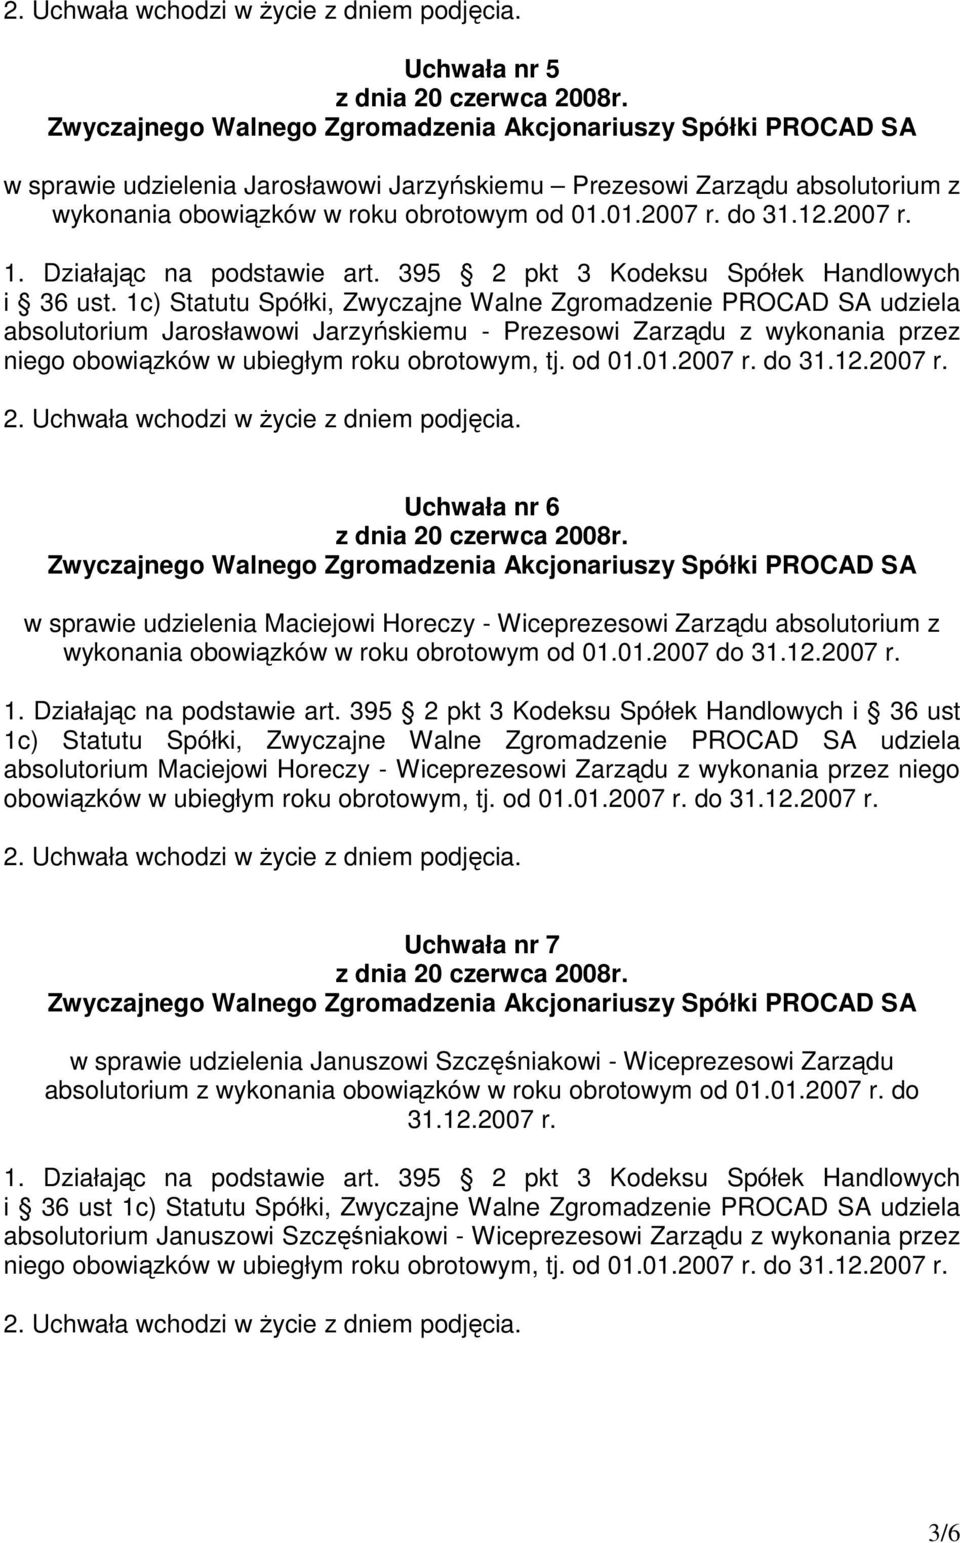 1c) Statutu Spółki, Zwyczajne Walne Zgromadzenie PROCAD SA udziela absolutorium Jarosławowi Jarzyńskiemu - Prezesowi Zarządu z wykonania przez niego obowiązków w ubiegłym roku obrotowym, tj. od 01.